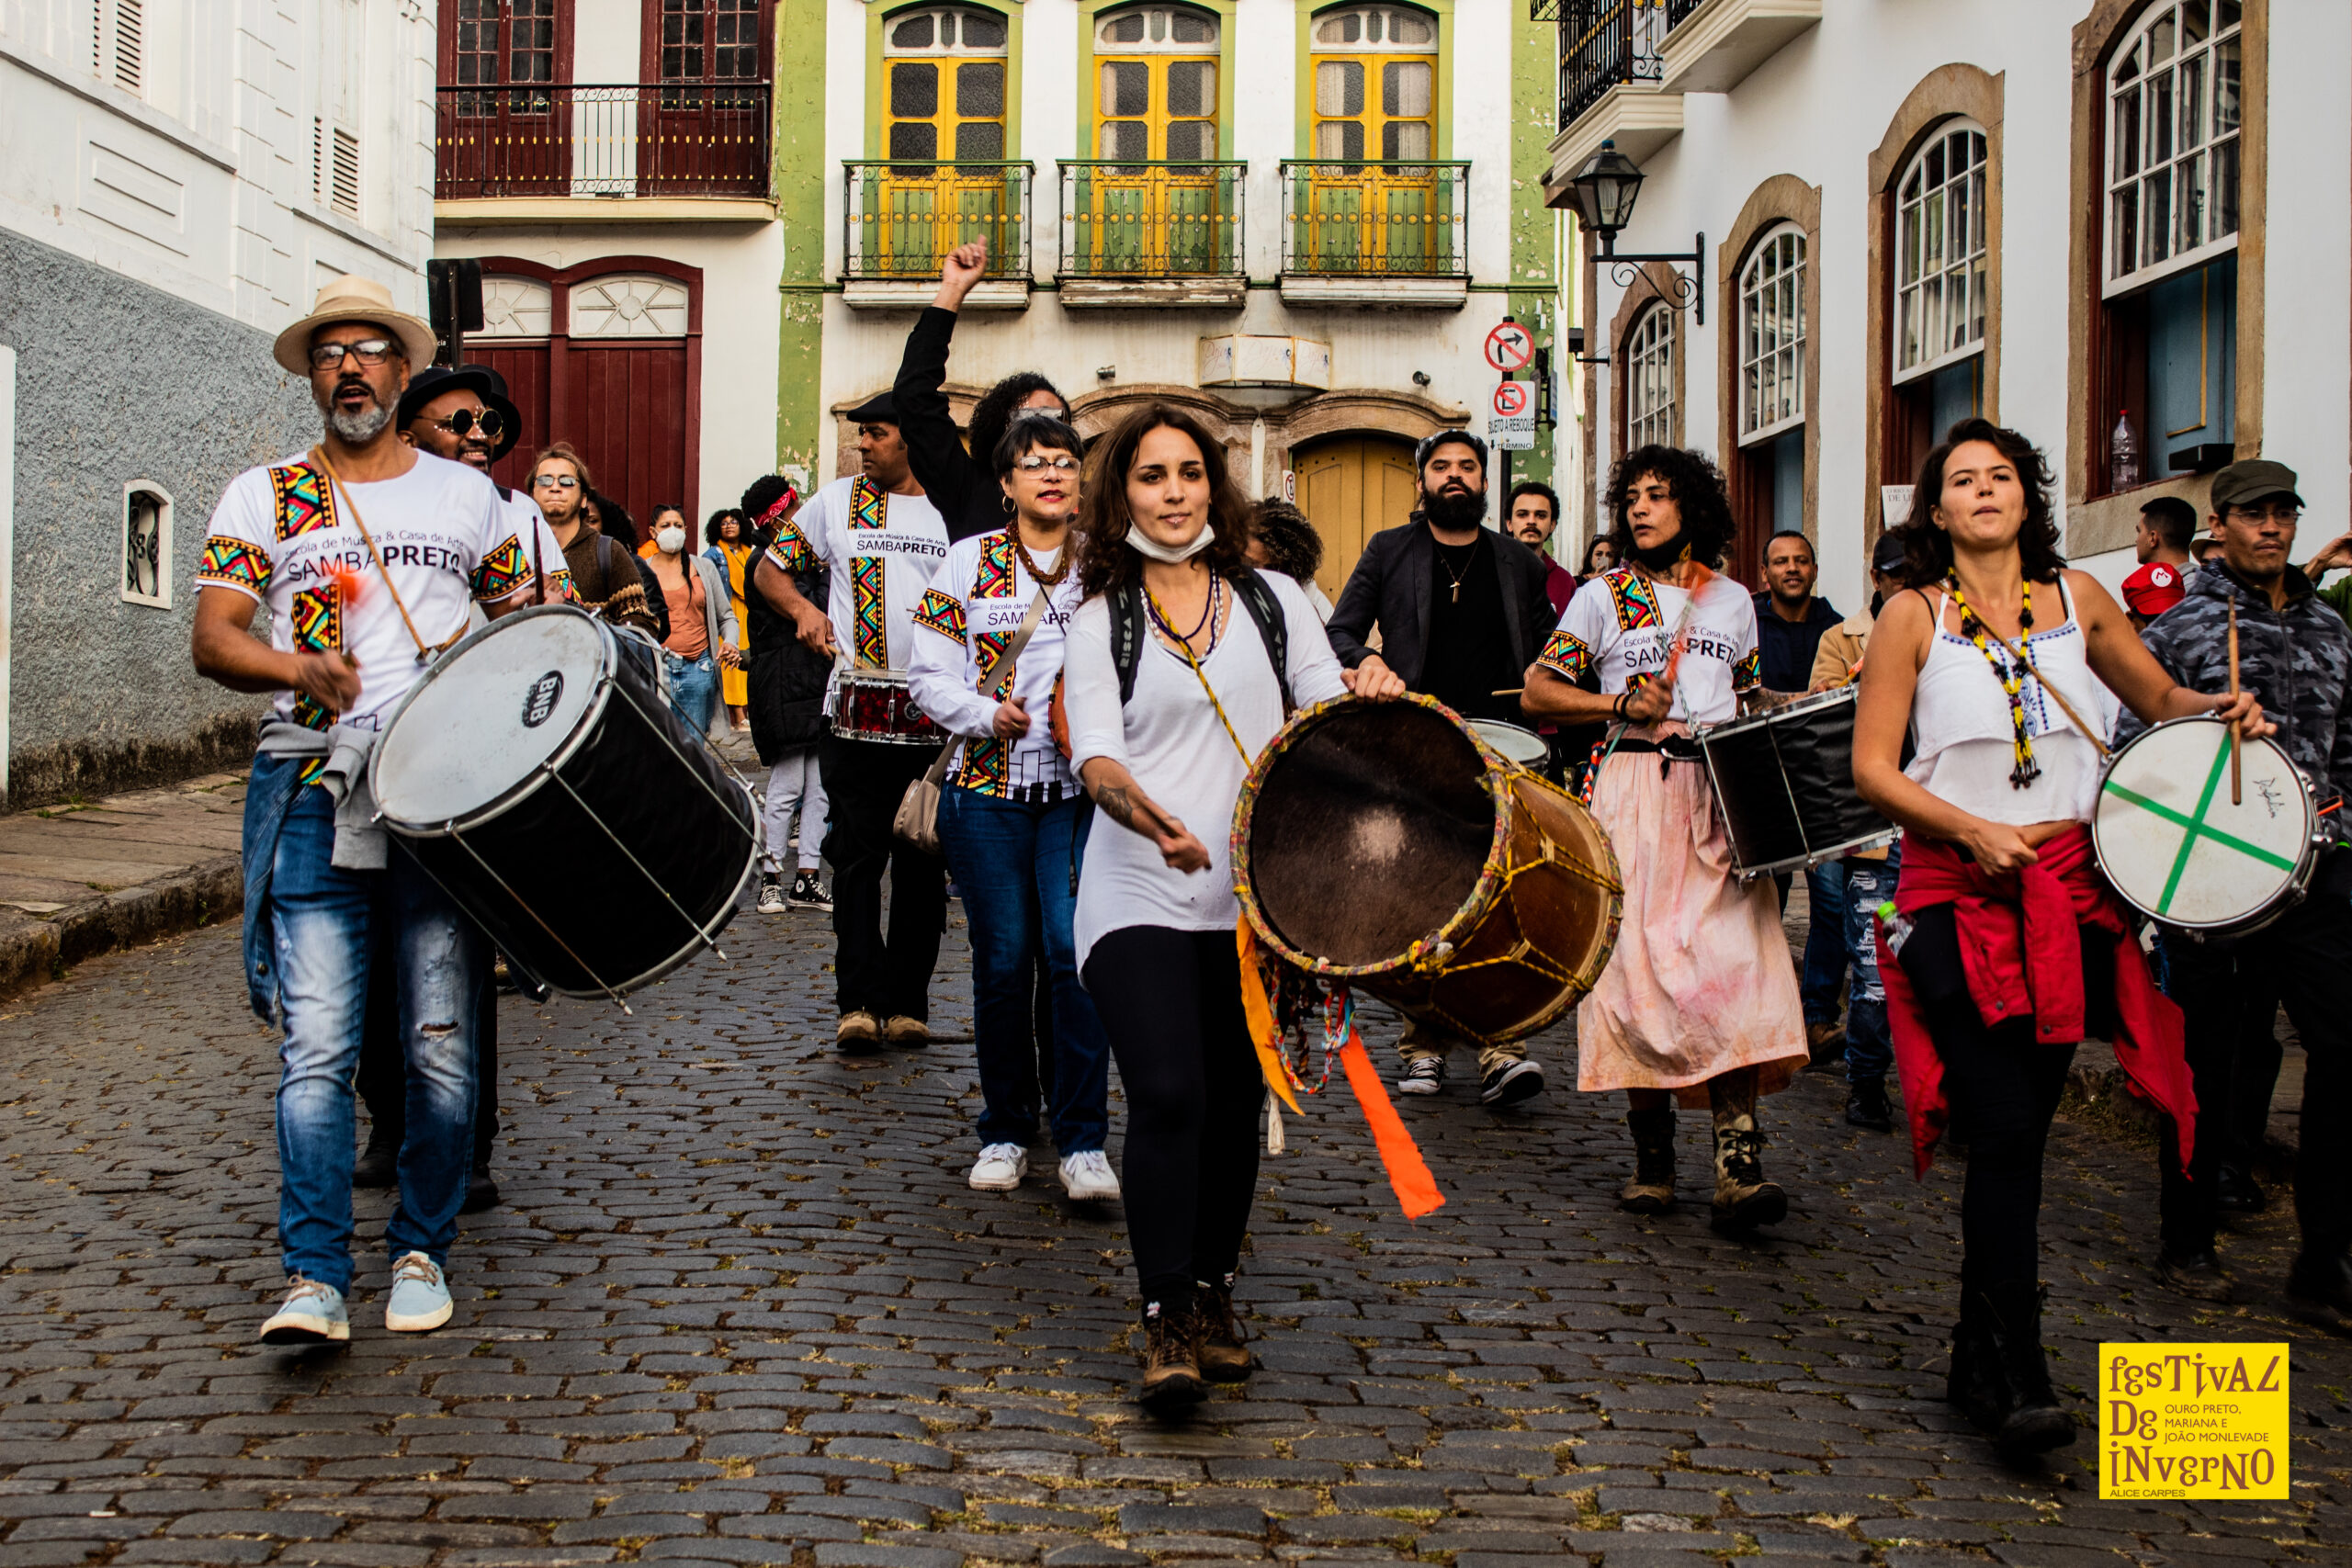 Cortejo da Escola Samba Preto nas ruas de Ouro Preto - Foto: Alice Carpes